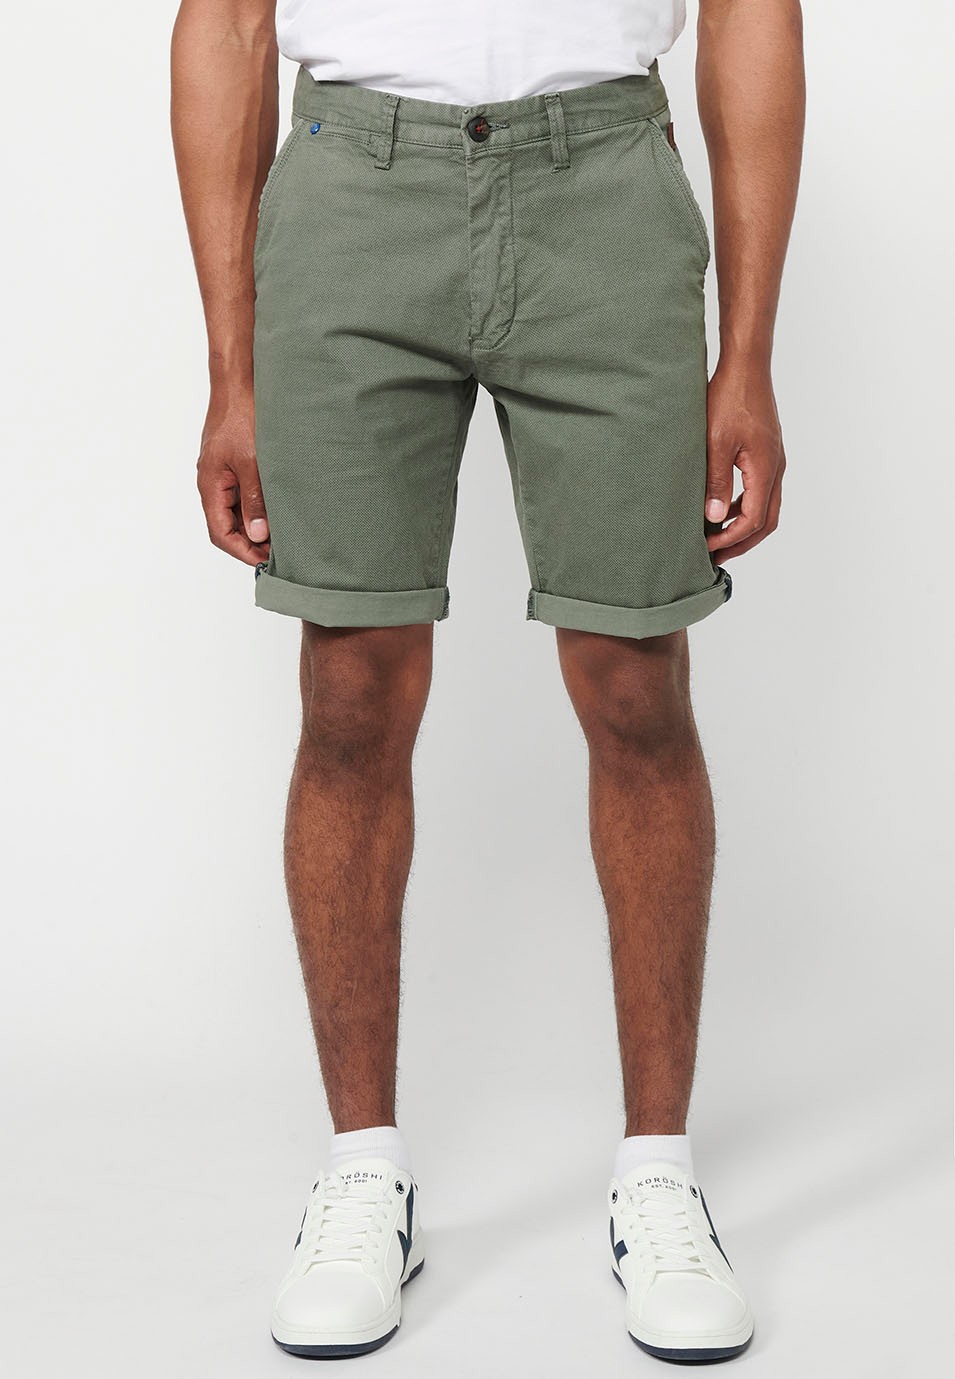 Bermuda-Chino-Shorts mit Umschlag, Reißverschluss vorne und Knopfverschluss und vier Taschen in grüner Farbe für Herren 2